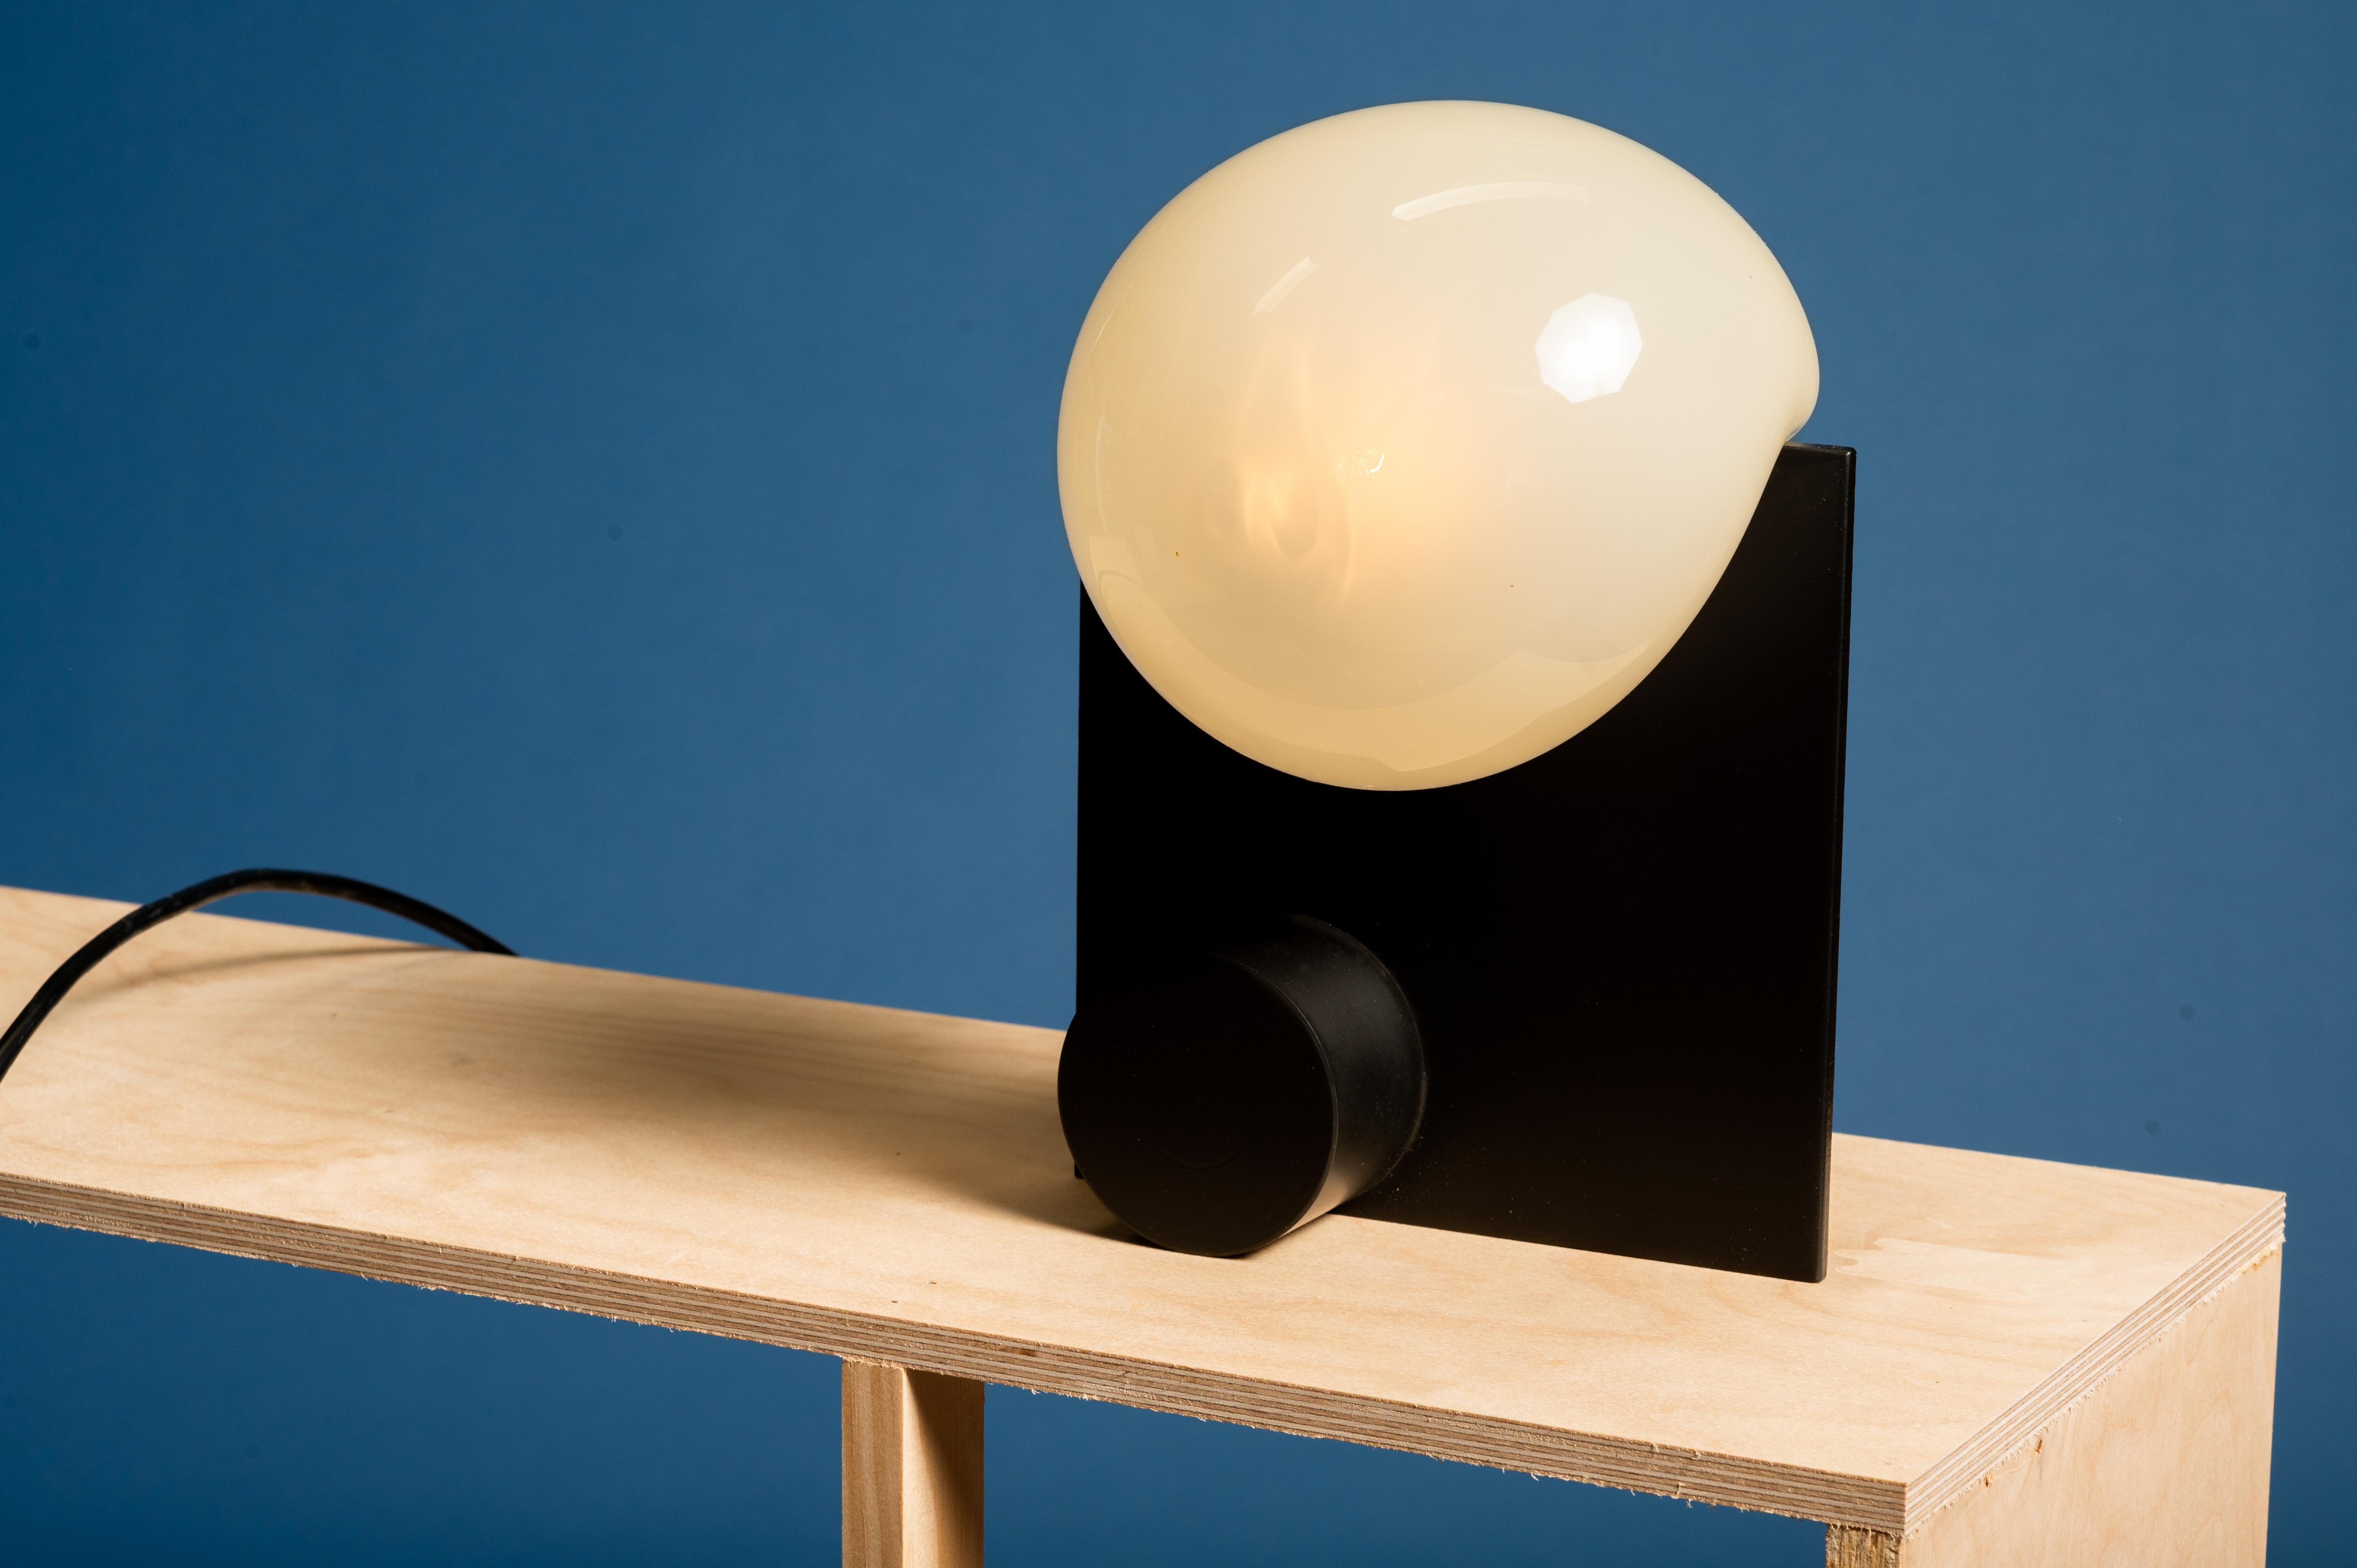 Lampe de table Black Bloop de Nick Pourfard
Dimensions : D 10 x L 20,5 x H 20,5 cm.
Matériaux : métal, verre.
Différentes finitions disponibles. 

Toutes nos lampes peuvent être câblées en fonction de chaque pays. Si elle est vendue aux